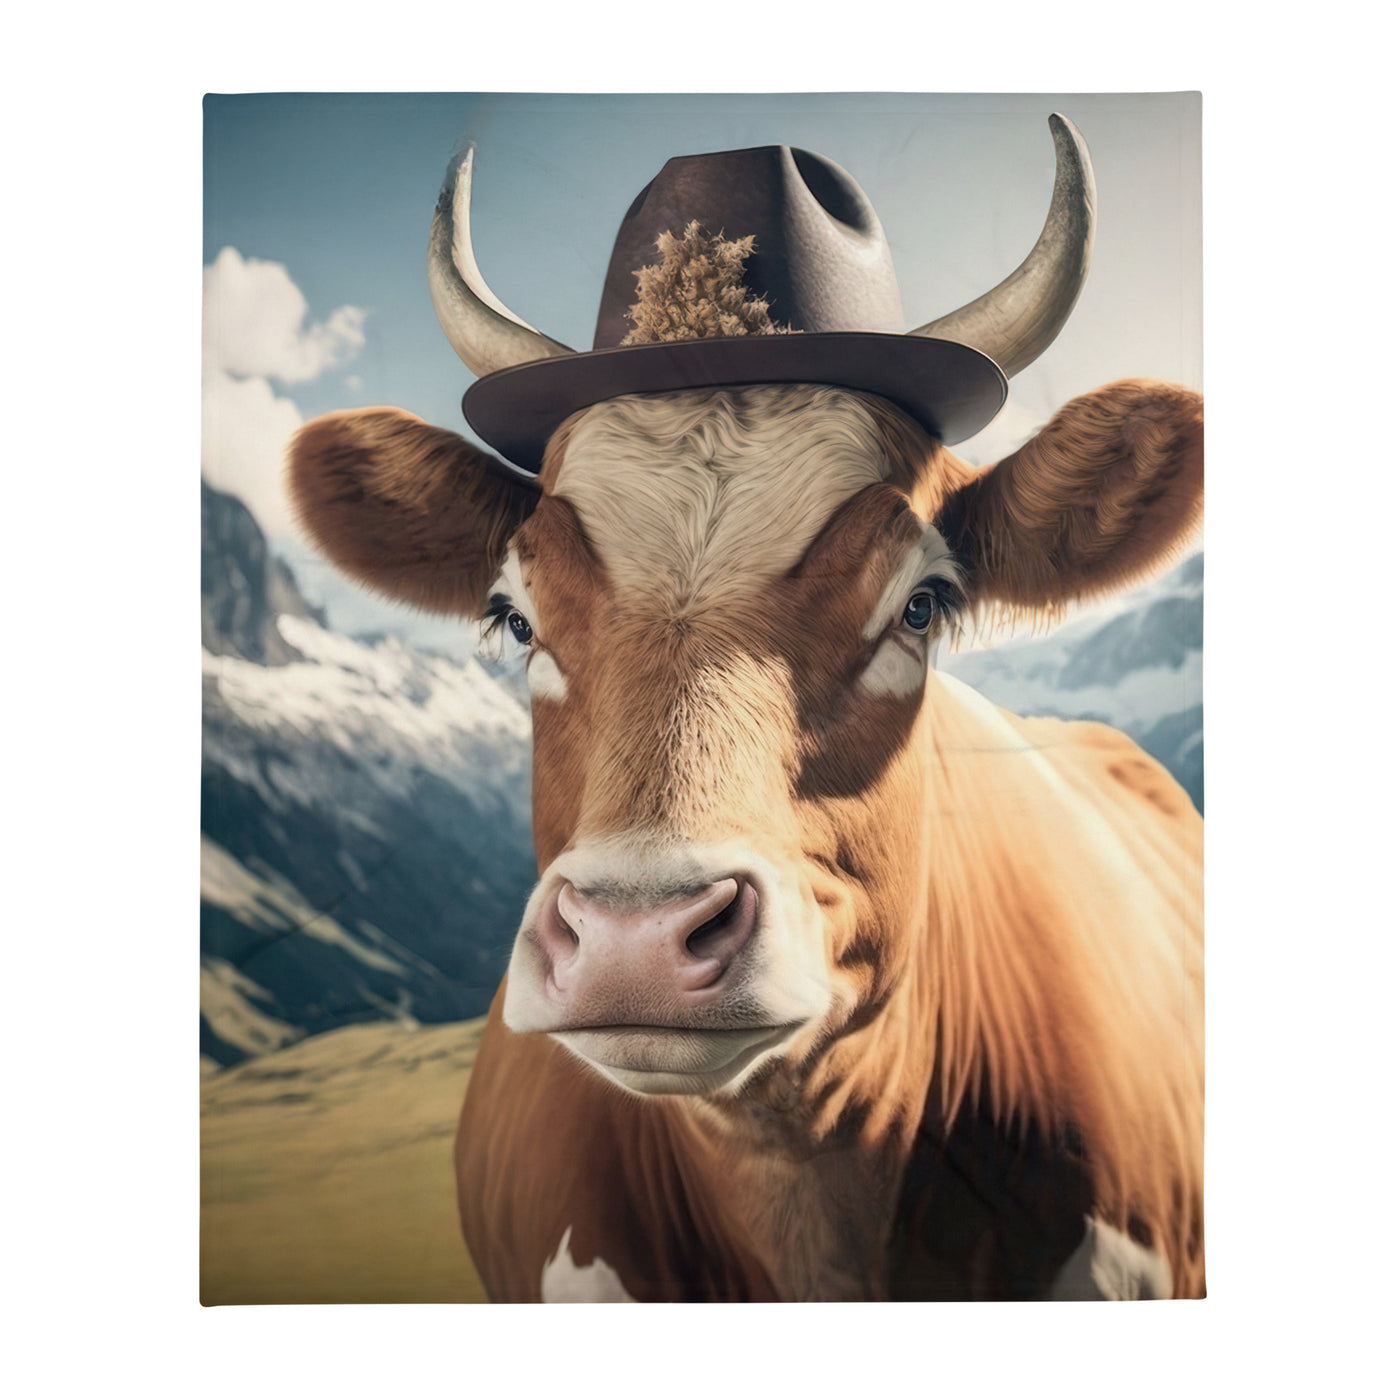 Kuh mit Hut in den Alpen - Berge im Hintergrund - Landschaftsmalerei - Überwurfdecke berge xxx 127 x 152.4 cm